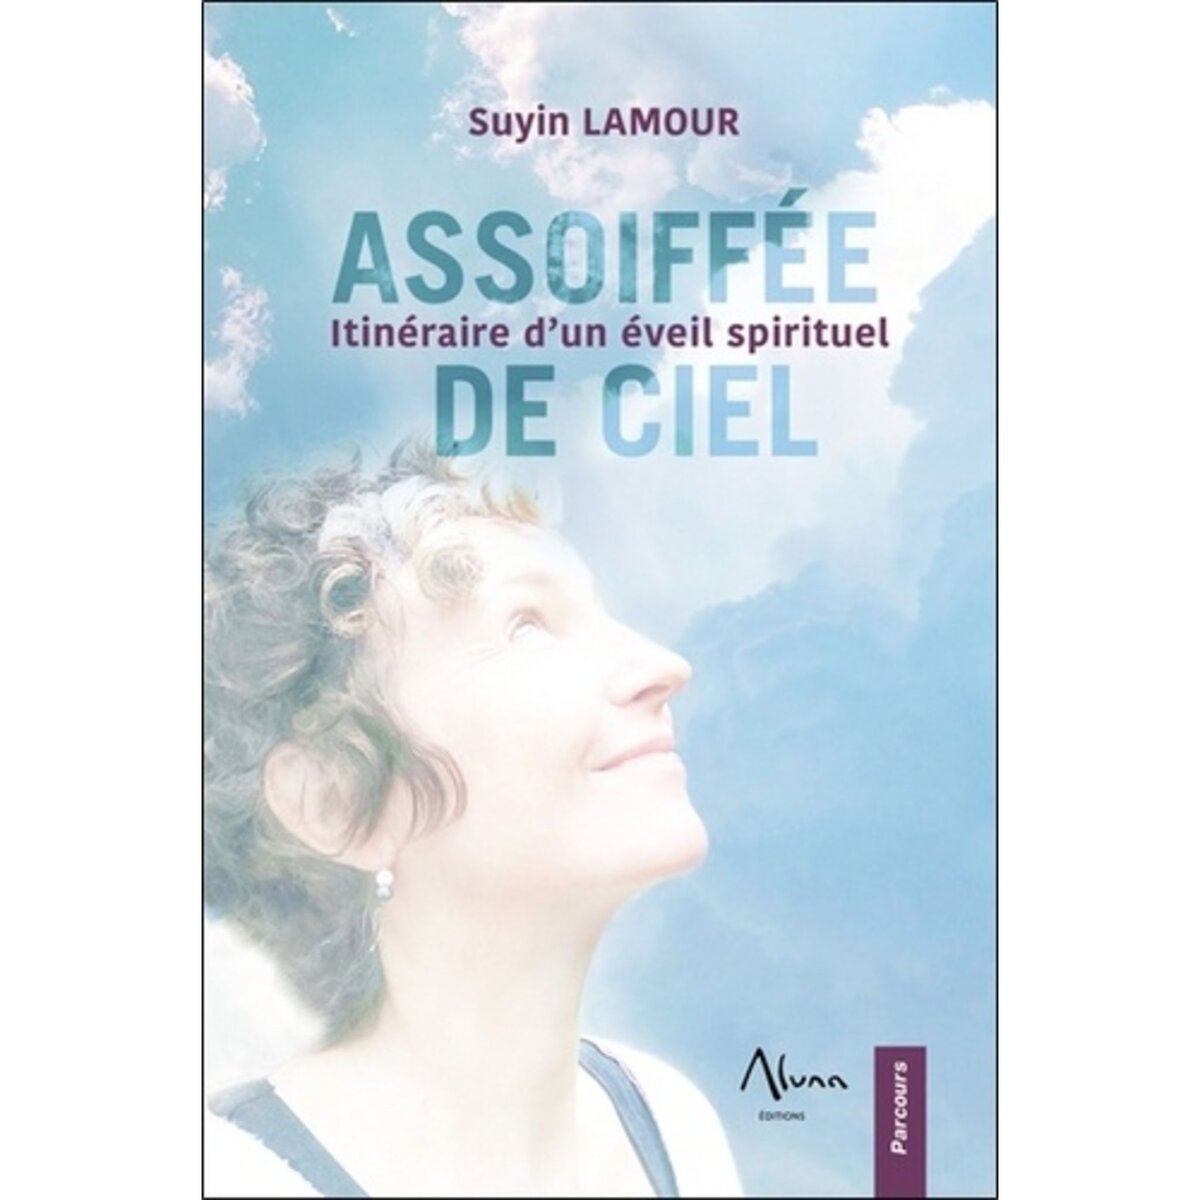  ASSOIFFEE DE CIEL. ITINERAIRE D'UN EVEIL SPIRITUEL, Lamour Suyin